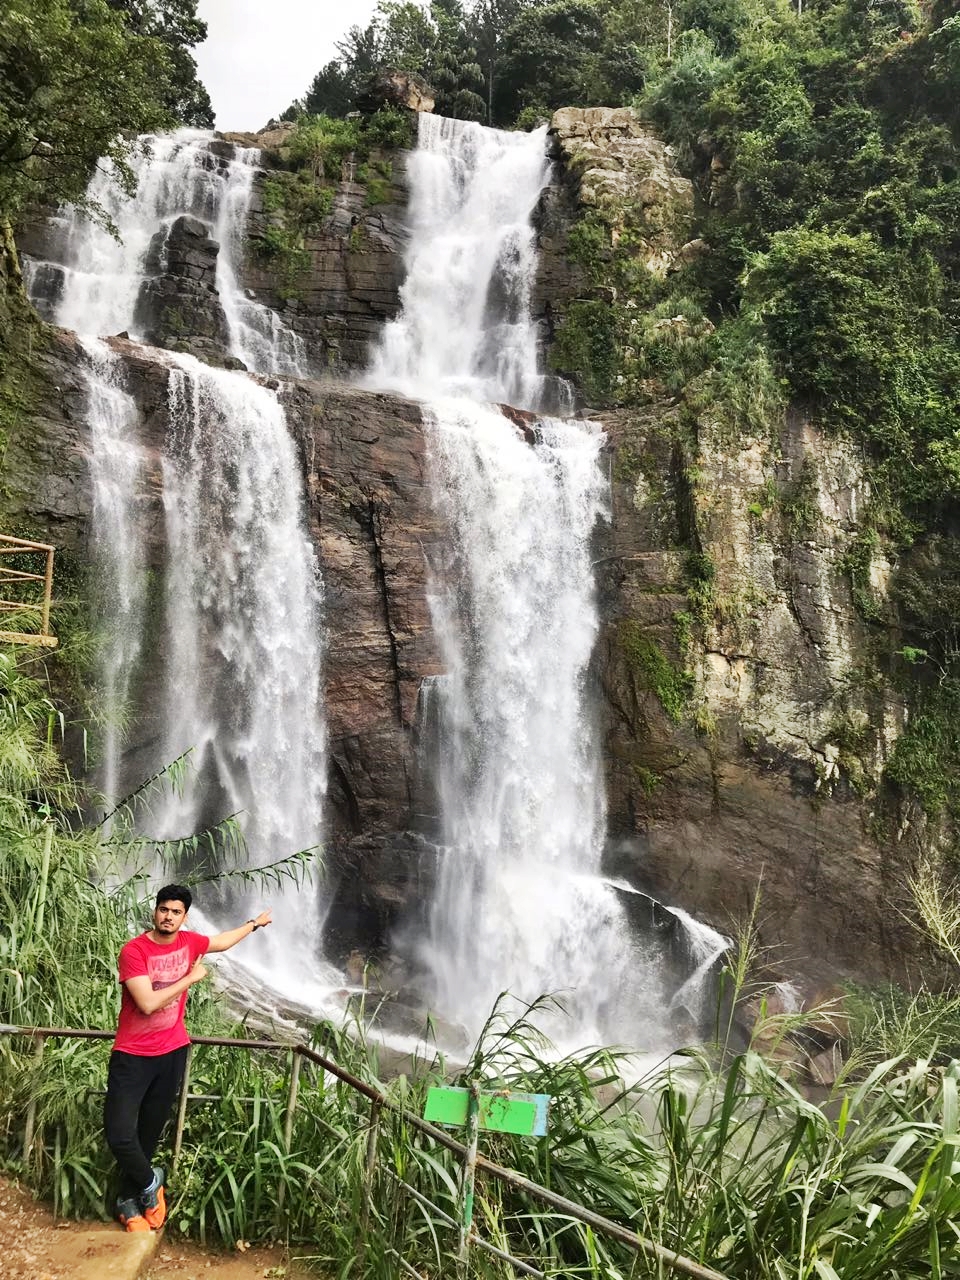 The Grand Ramboda Waterfalls